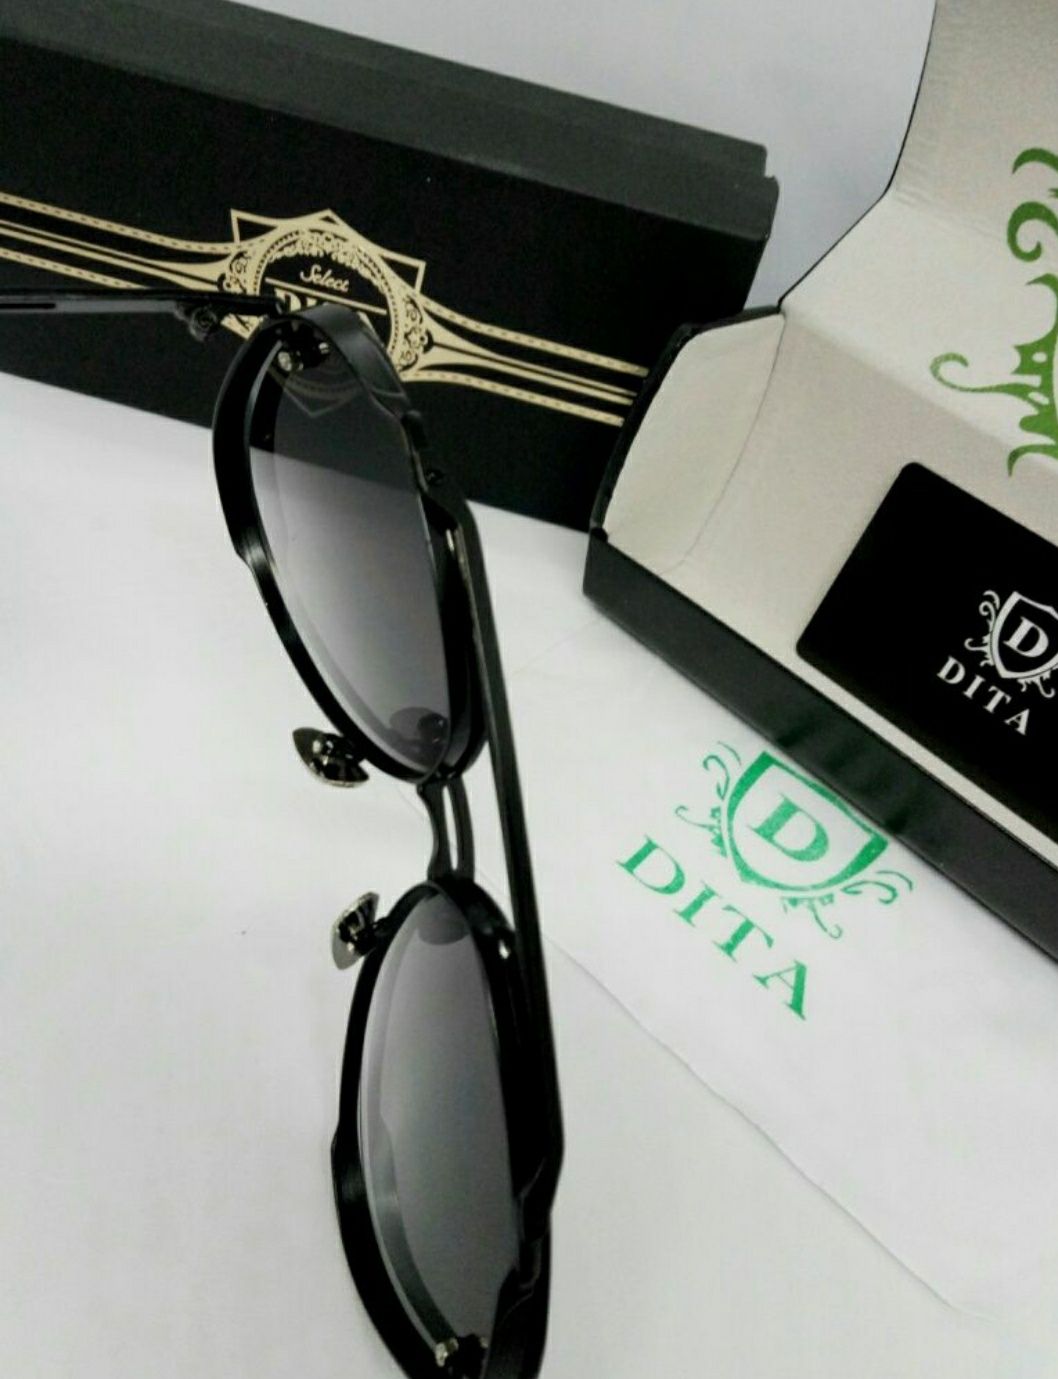 Dita стильные мужские очки черный градиент в черном металле